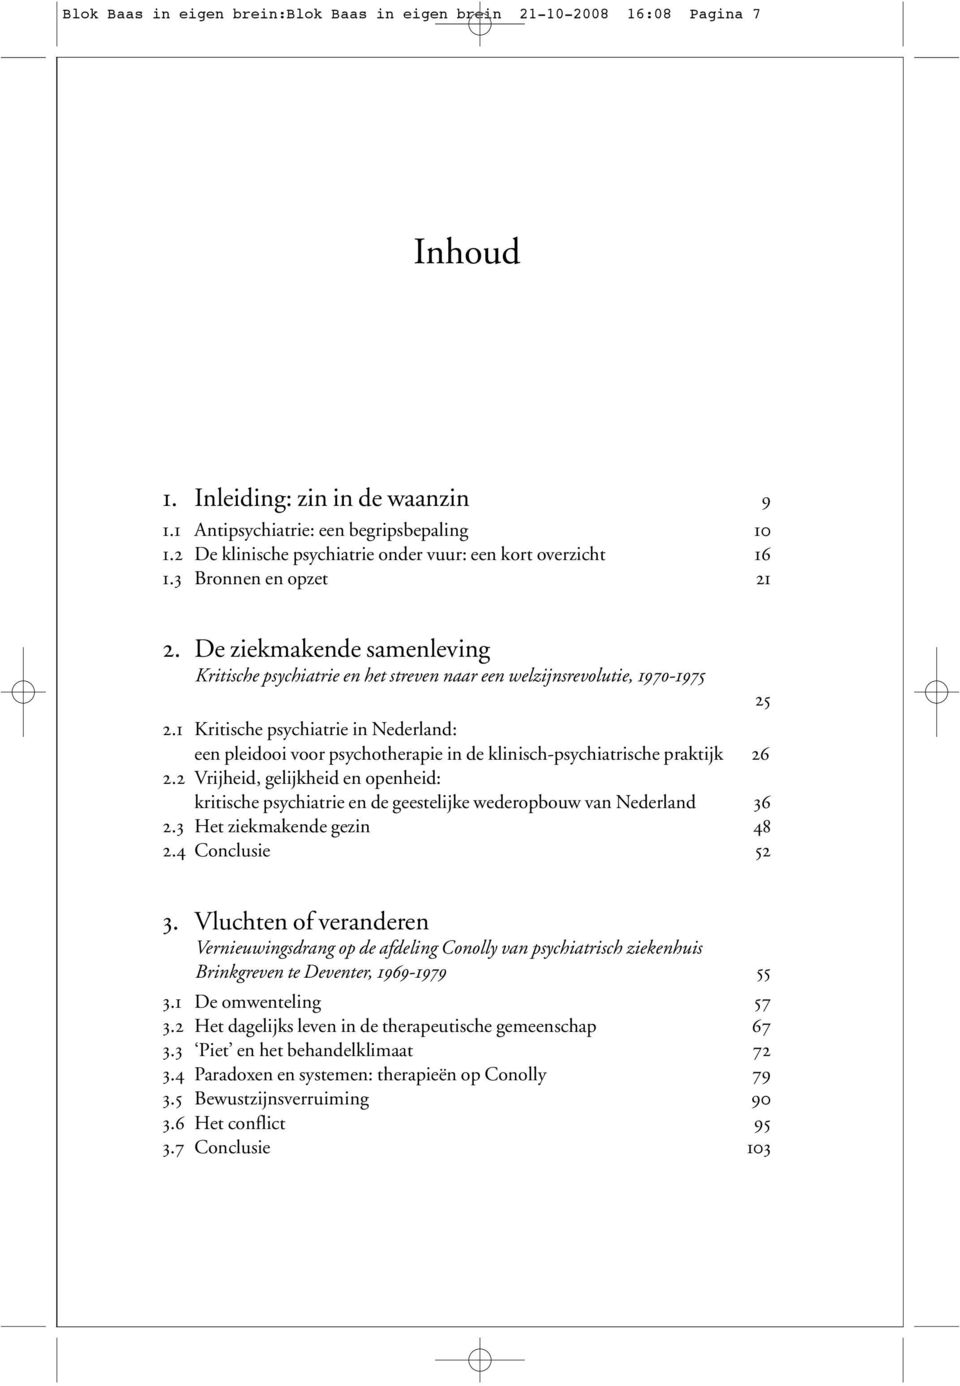 1 Kritische psychiatrie in Nederland: een pleidooi voor psychotherapie in de klinisch-psychiatrische praktijk 26 2.